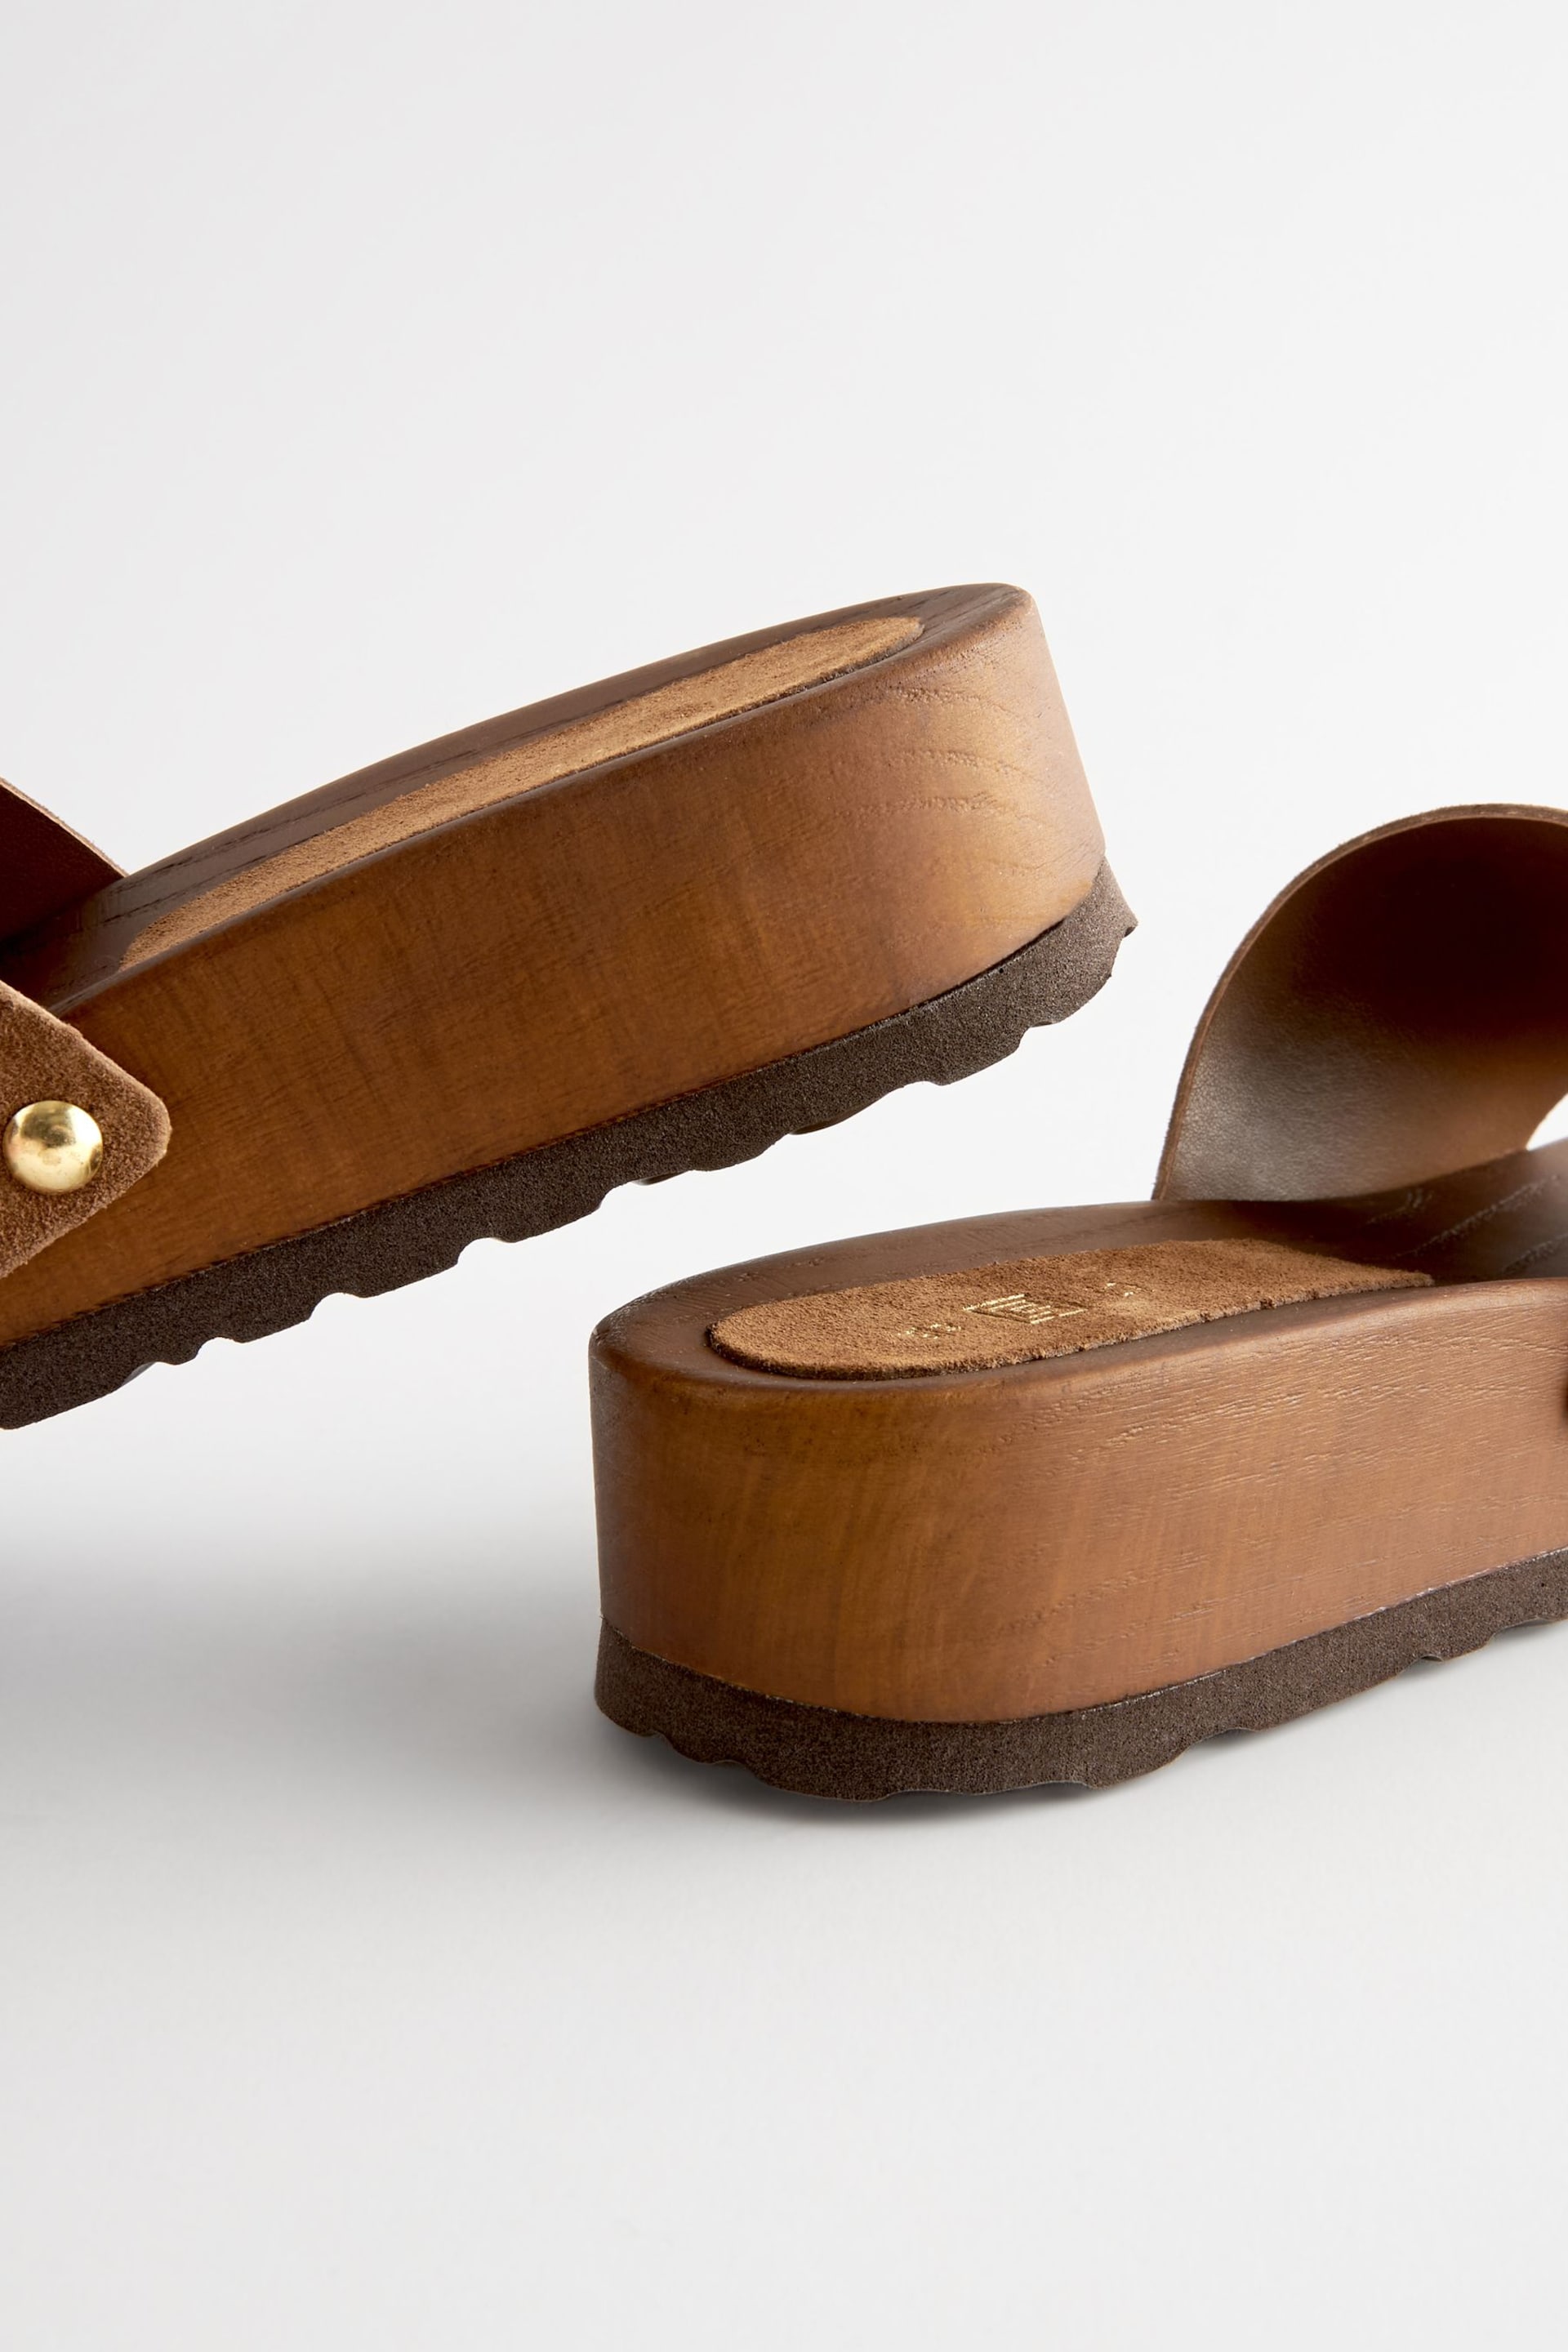 Tan Brown Buckle Clog Mule Sandals - Image 5 of 5